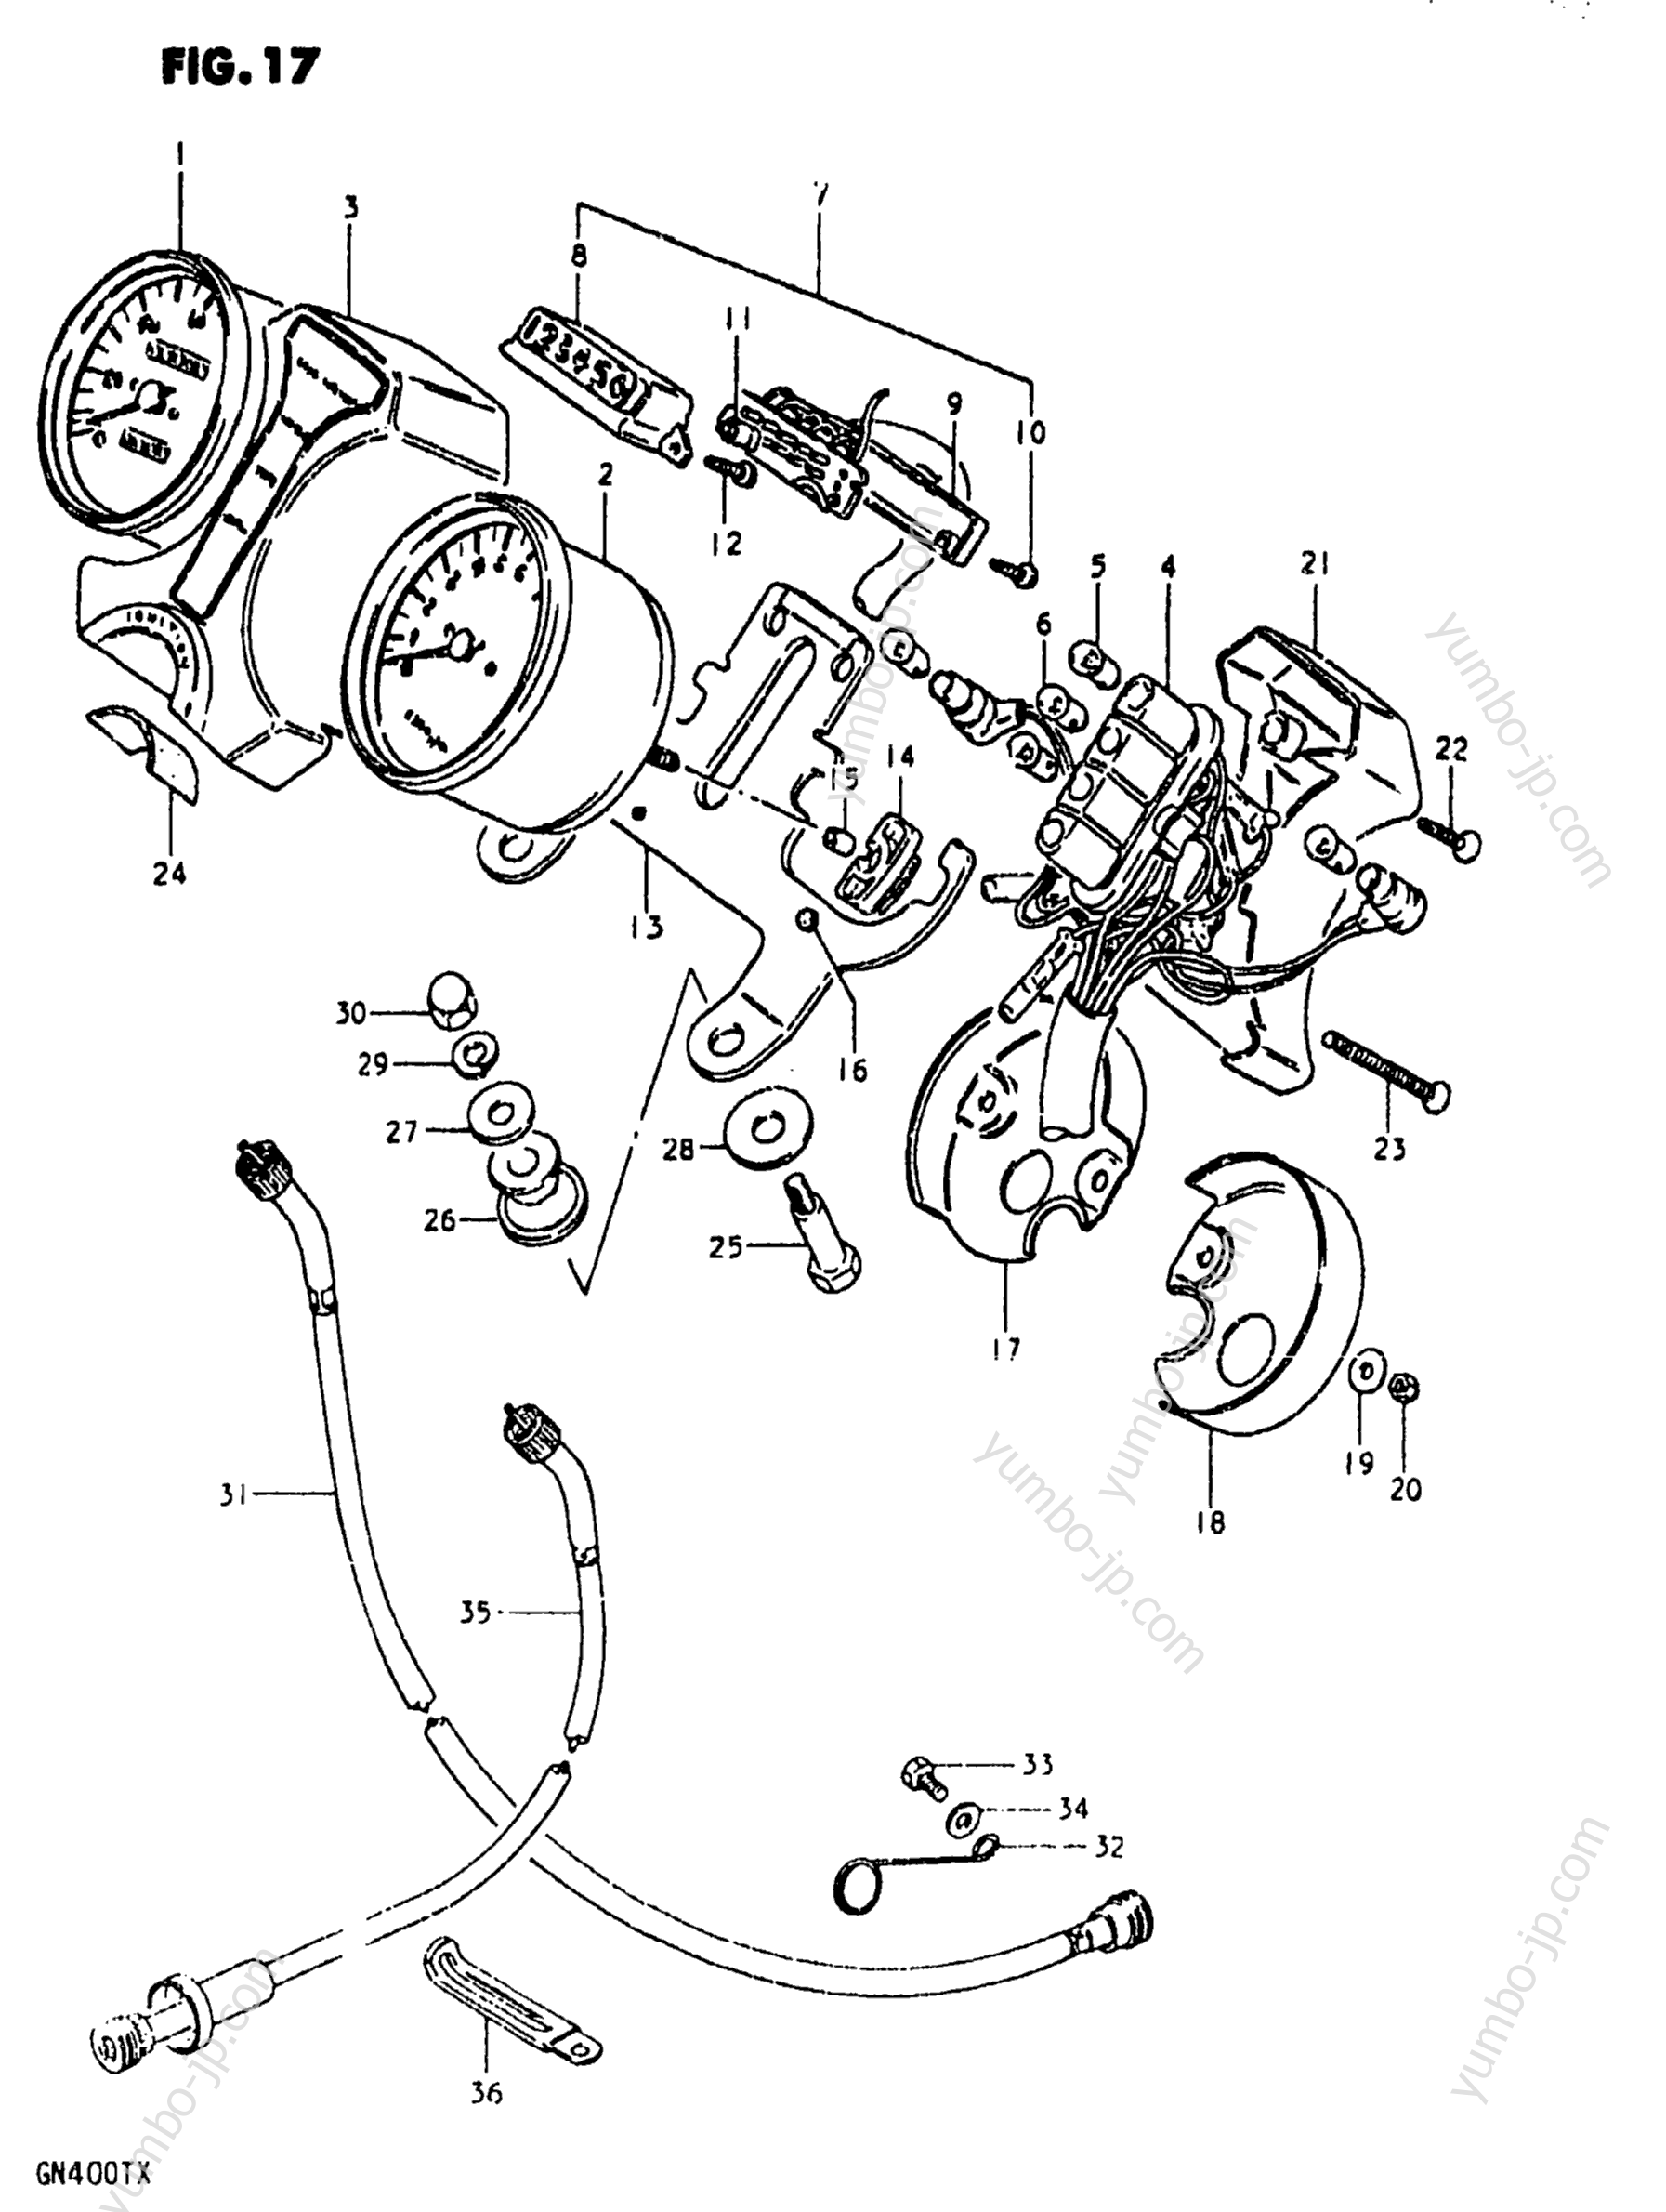 Speedometer - Tachometer for motorcycles SUZUKI GN400XX 1980 year